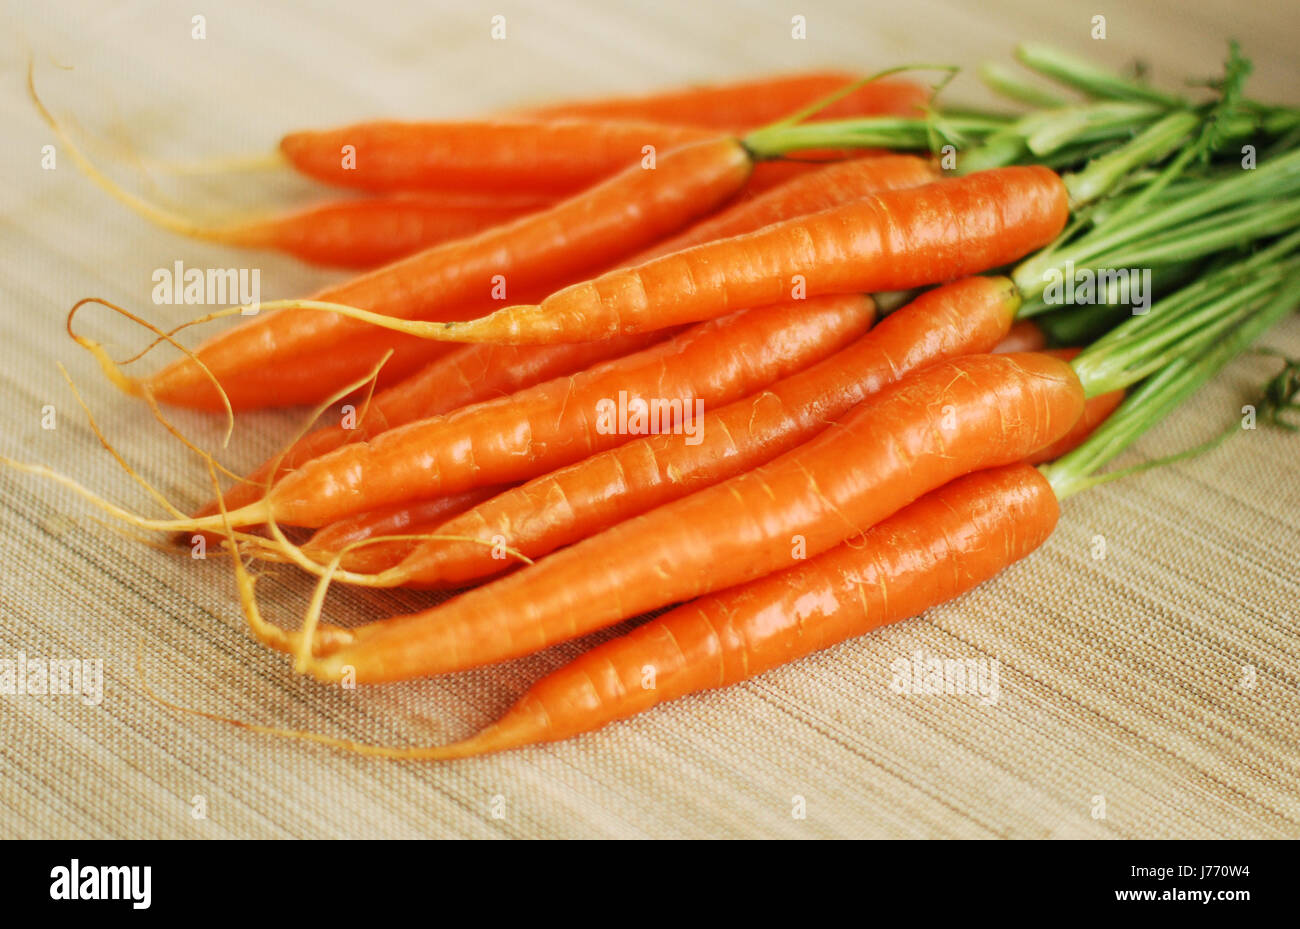 Gemüse Karotten Karotten Liga vegetarische frische Lebensmittel Nahrungsmittel ungekocht Stockfoto